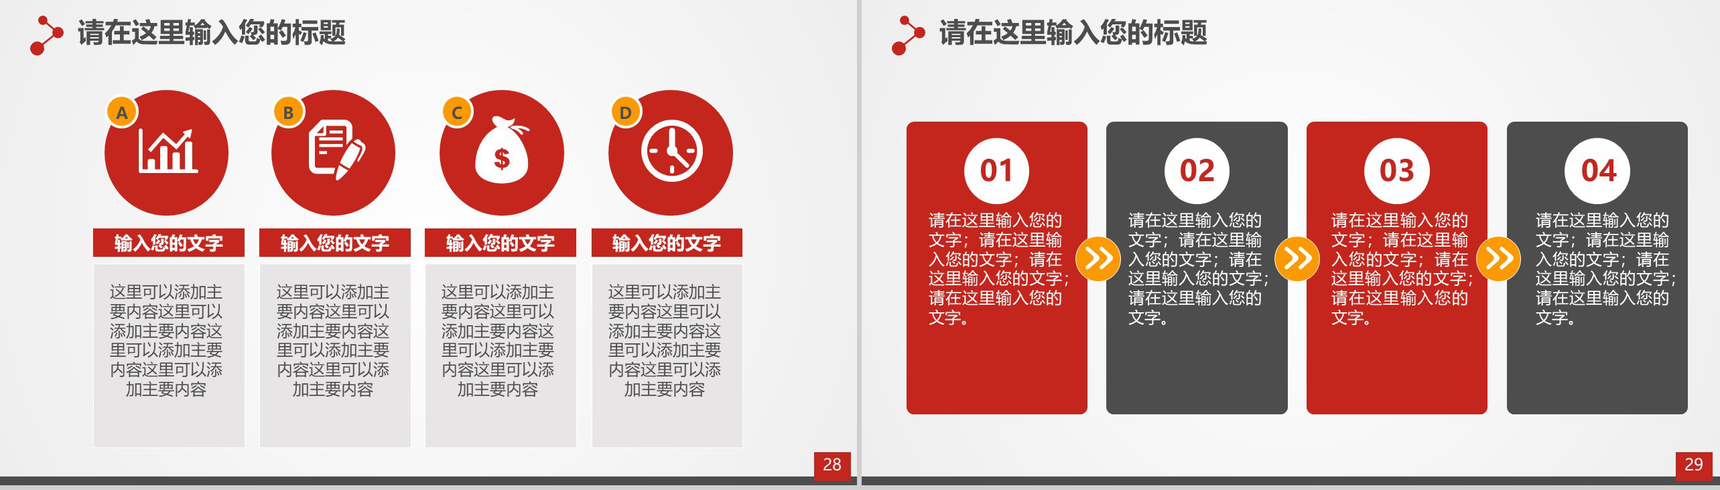 喜庆中国风企业签约仪式PPT模板-15